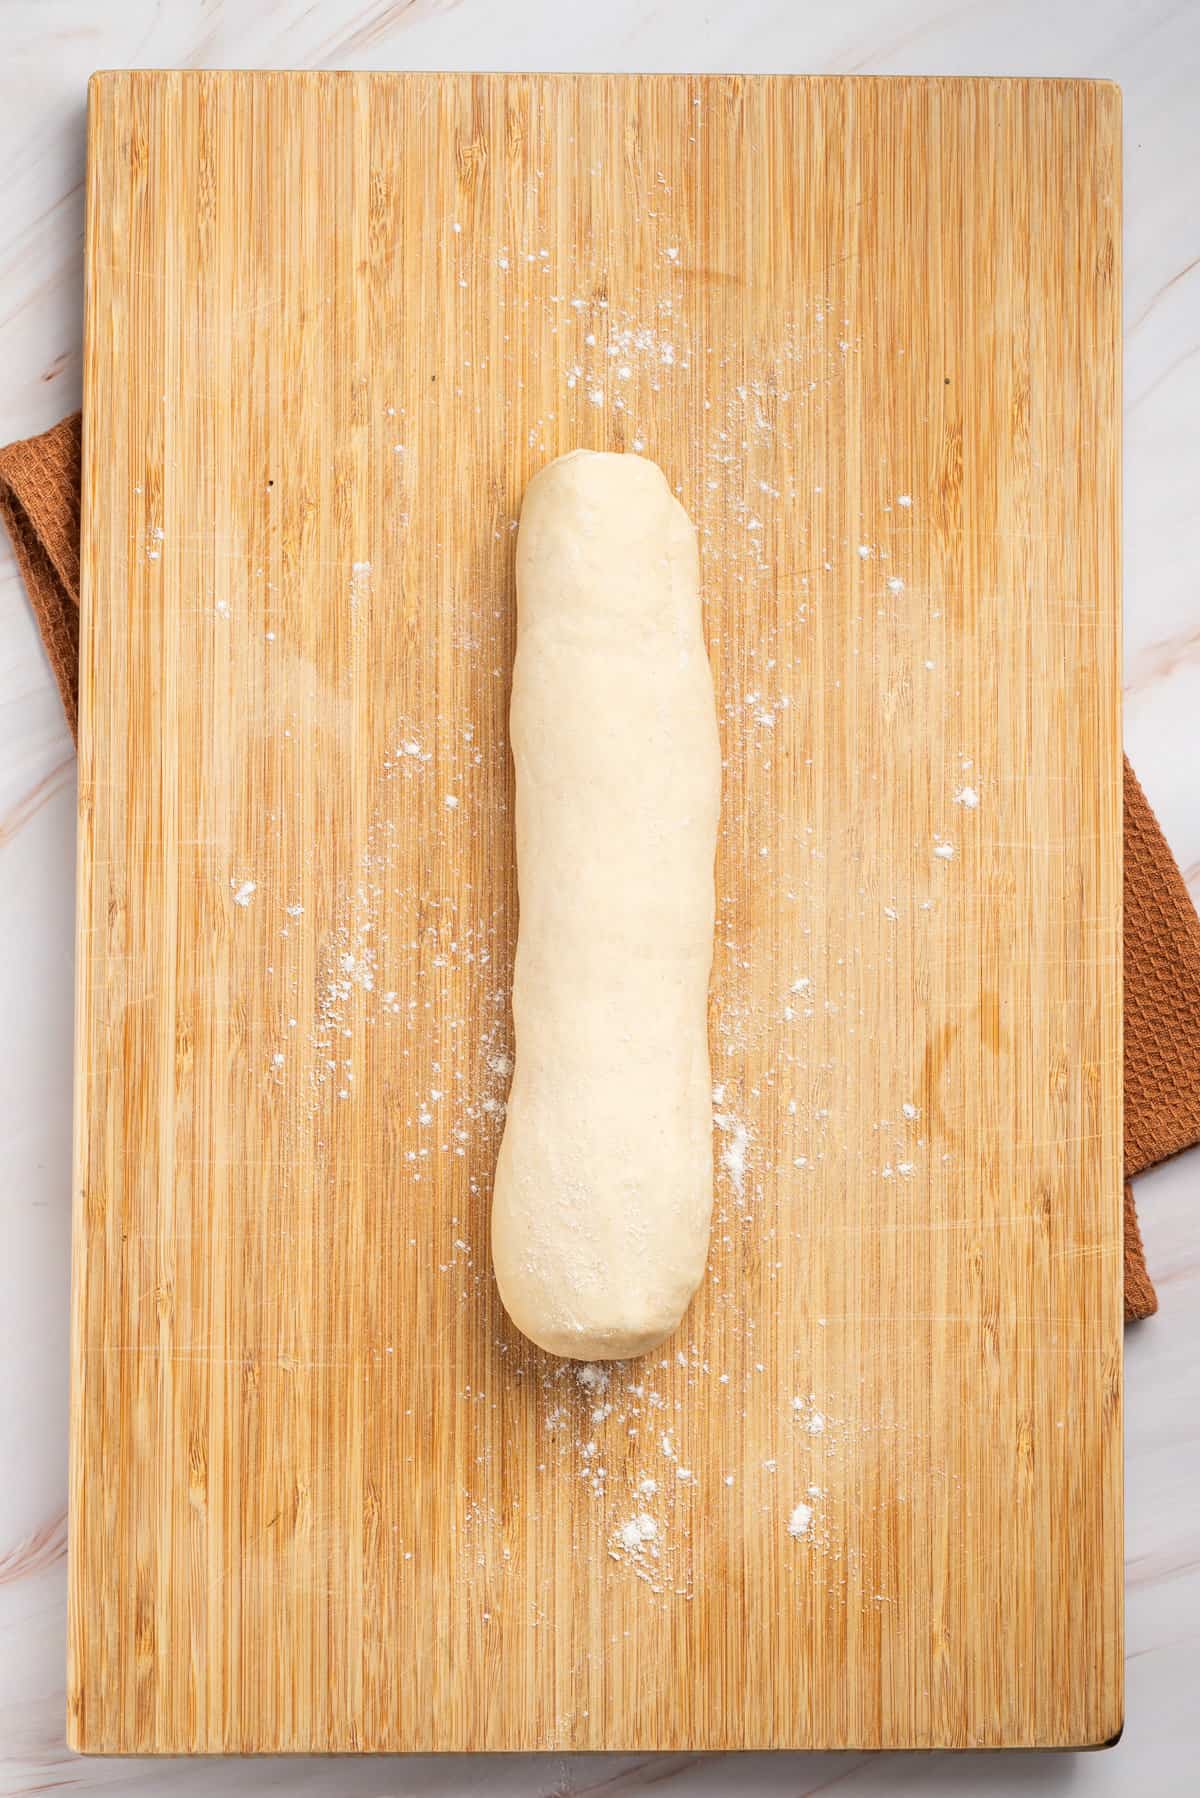 An image of samosa dough formed into a log shape.